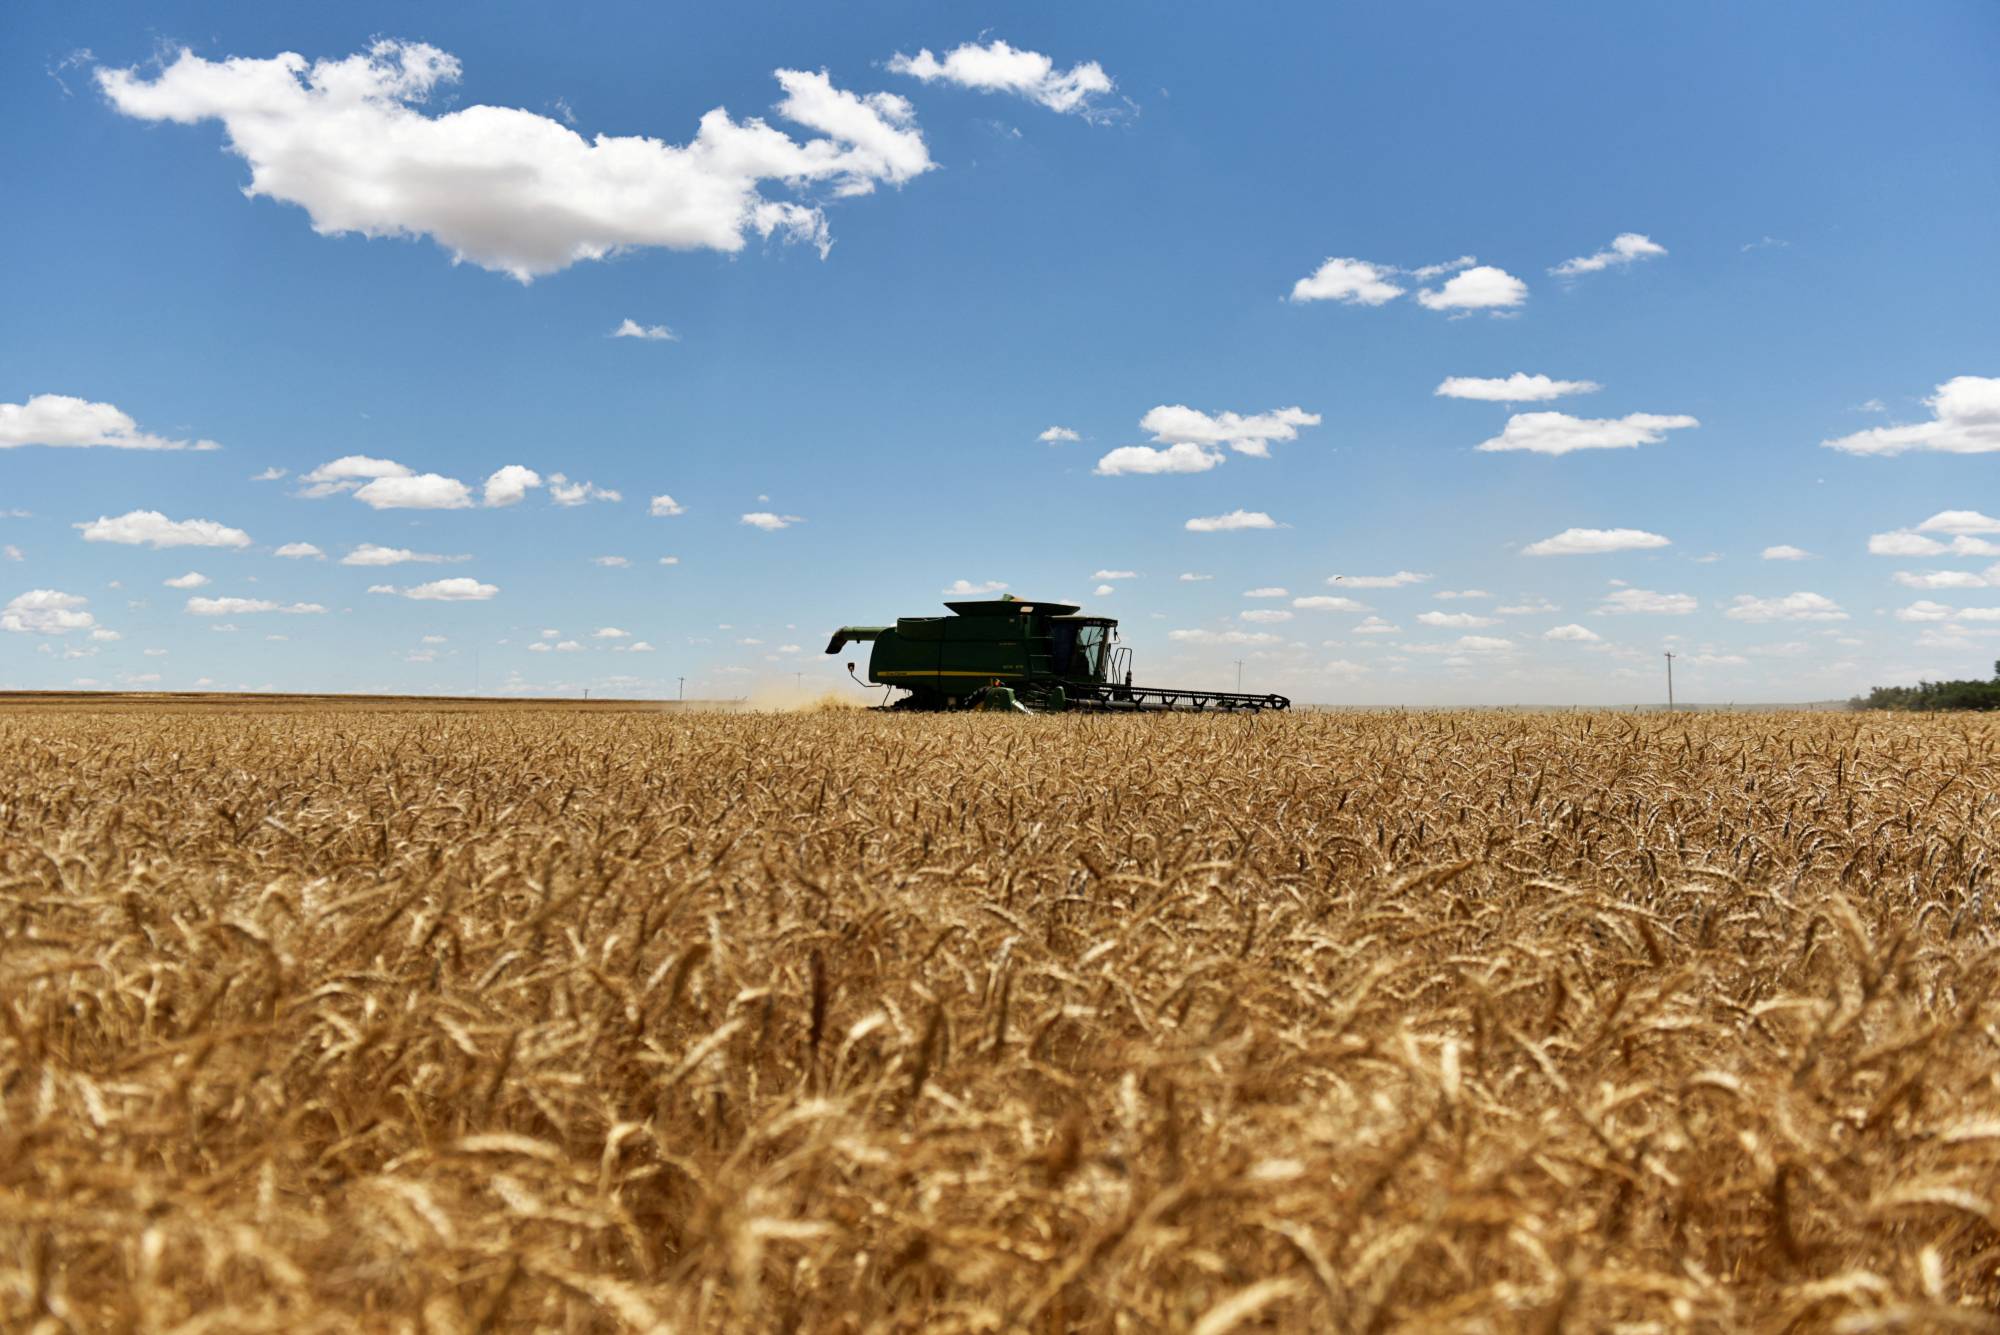 Guerra e fame: i russi accusati di aver rubato il grano conservato nei territori dell'Ucraina occupati